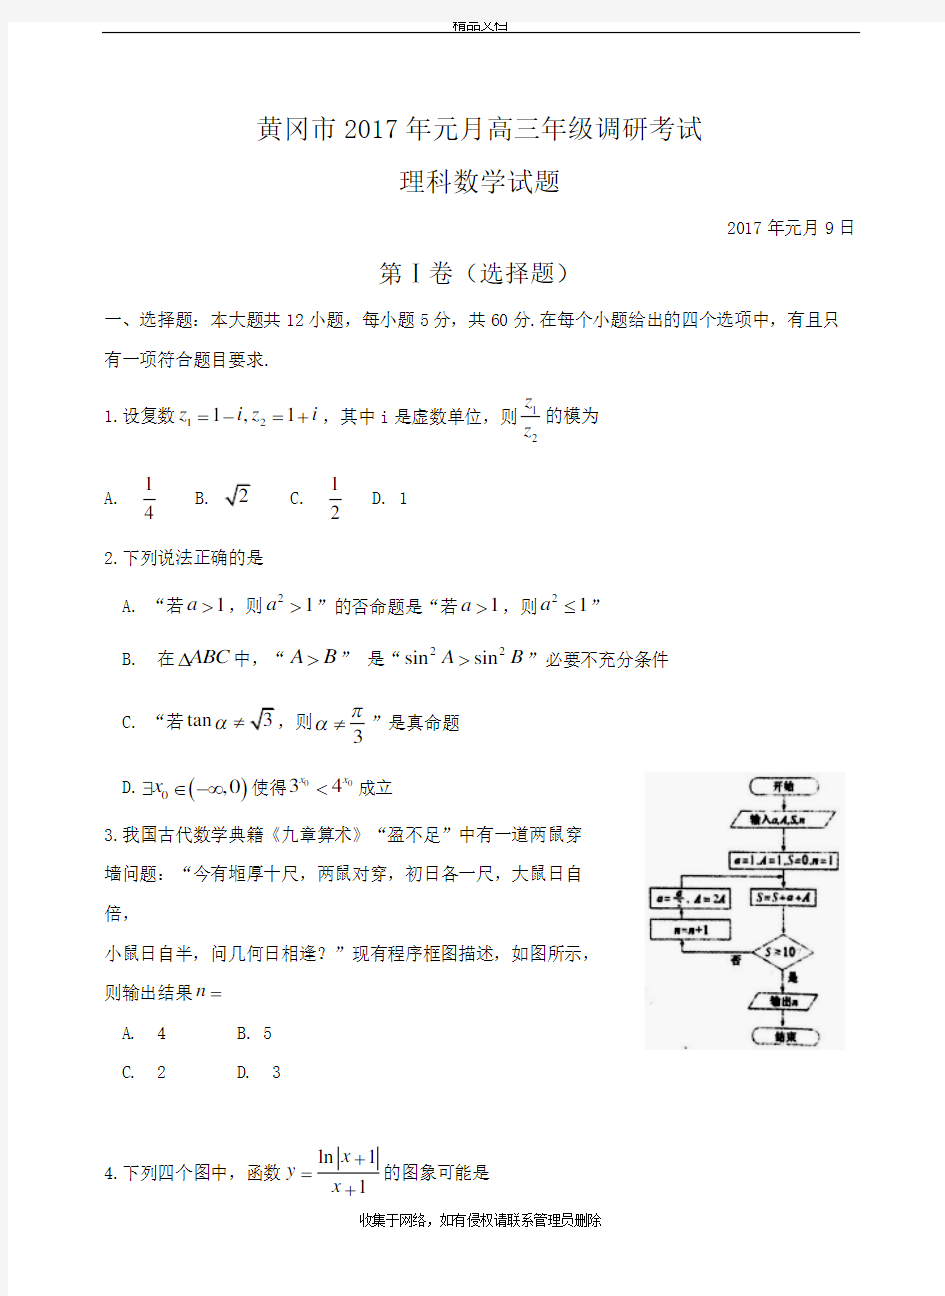 黄冈市2018年元月高三年级调研考试理科数学试题教学文稿